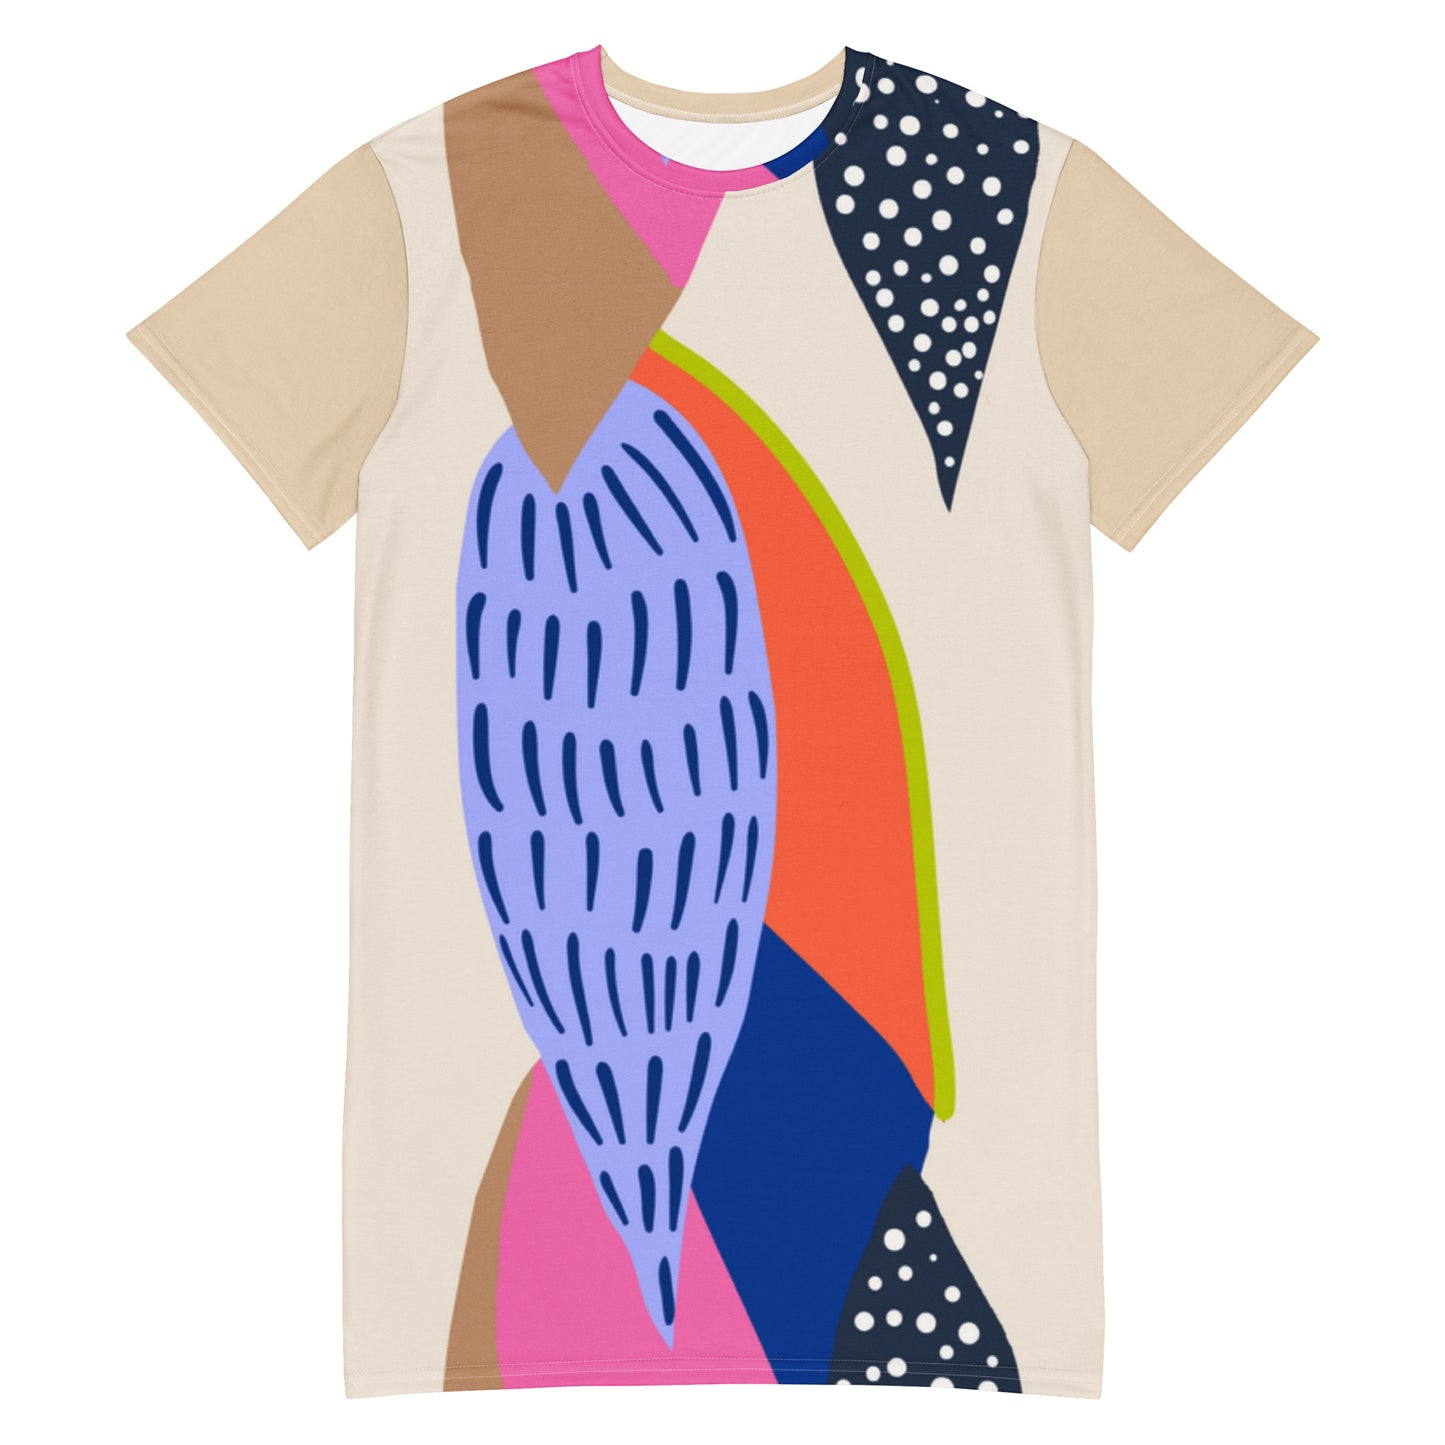 Merilevä - T-shirt dress - Dresses- Print N Stuff - [designed in Turku Finland]